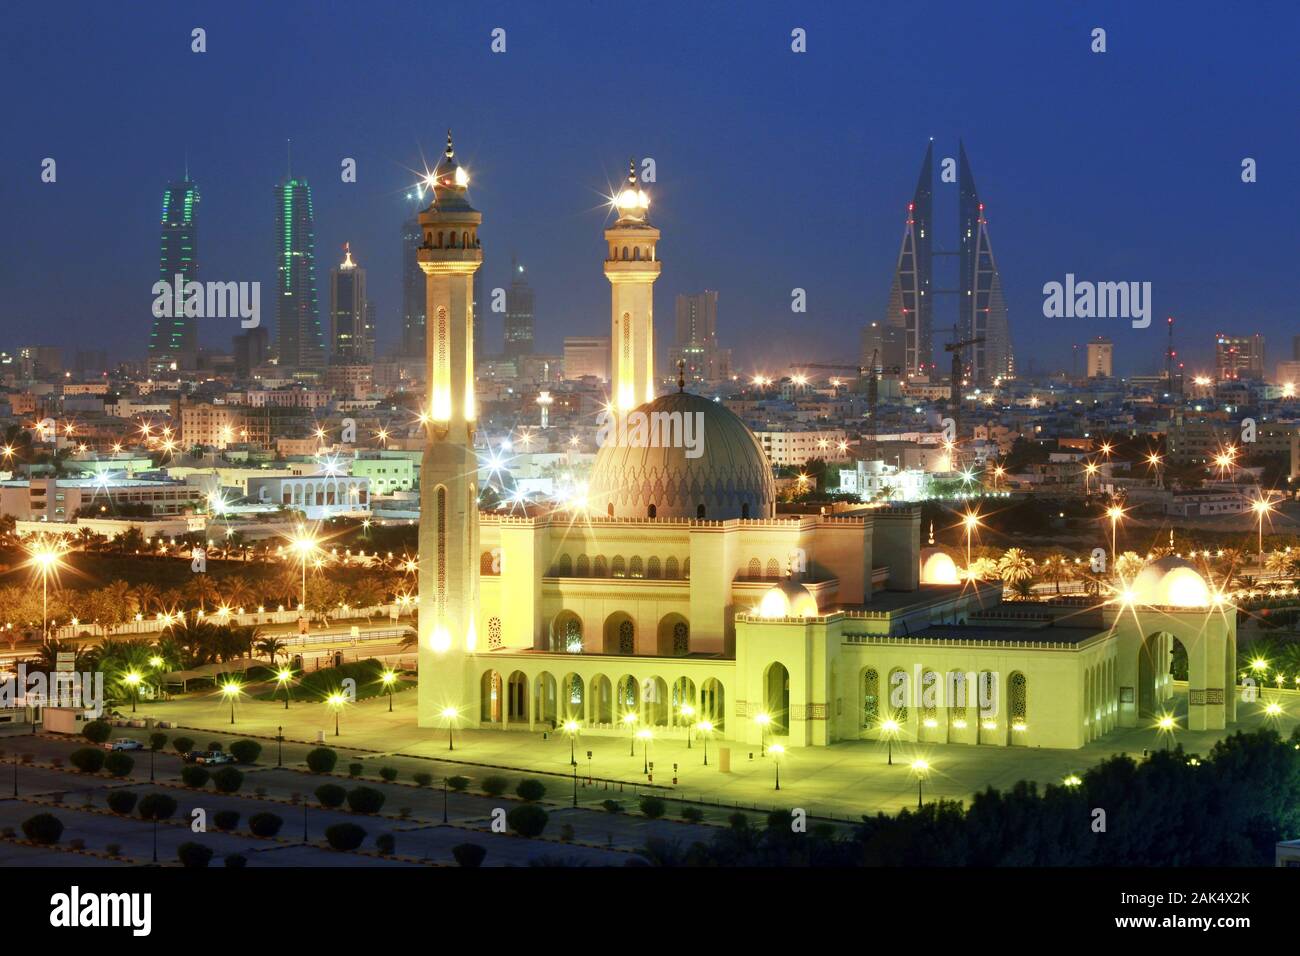 Bahrein: Grosse Moschee Koenigreich Mezquita Al-Fateh vor der Skyline Manamas, am Abend, Dubai | uso en todo el mundo Foto de stock